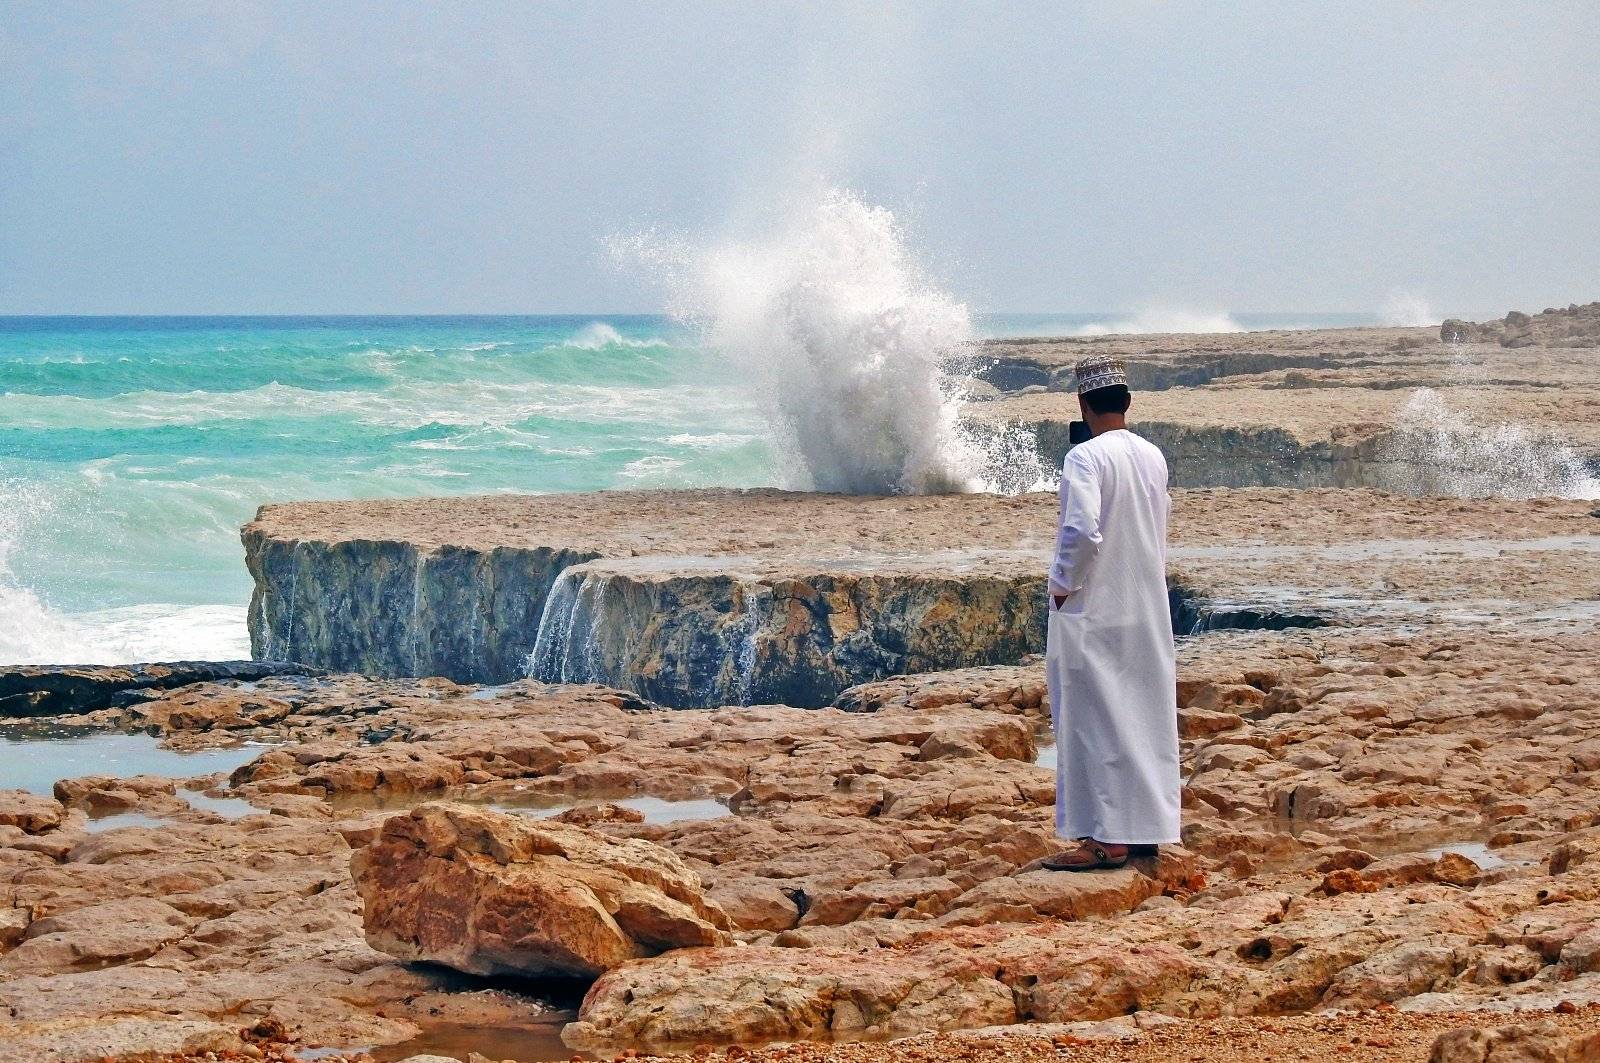 La costa da Muscat a Ras Al Hadd tra wadi e spiagge